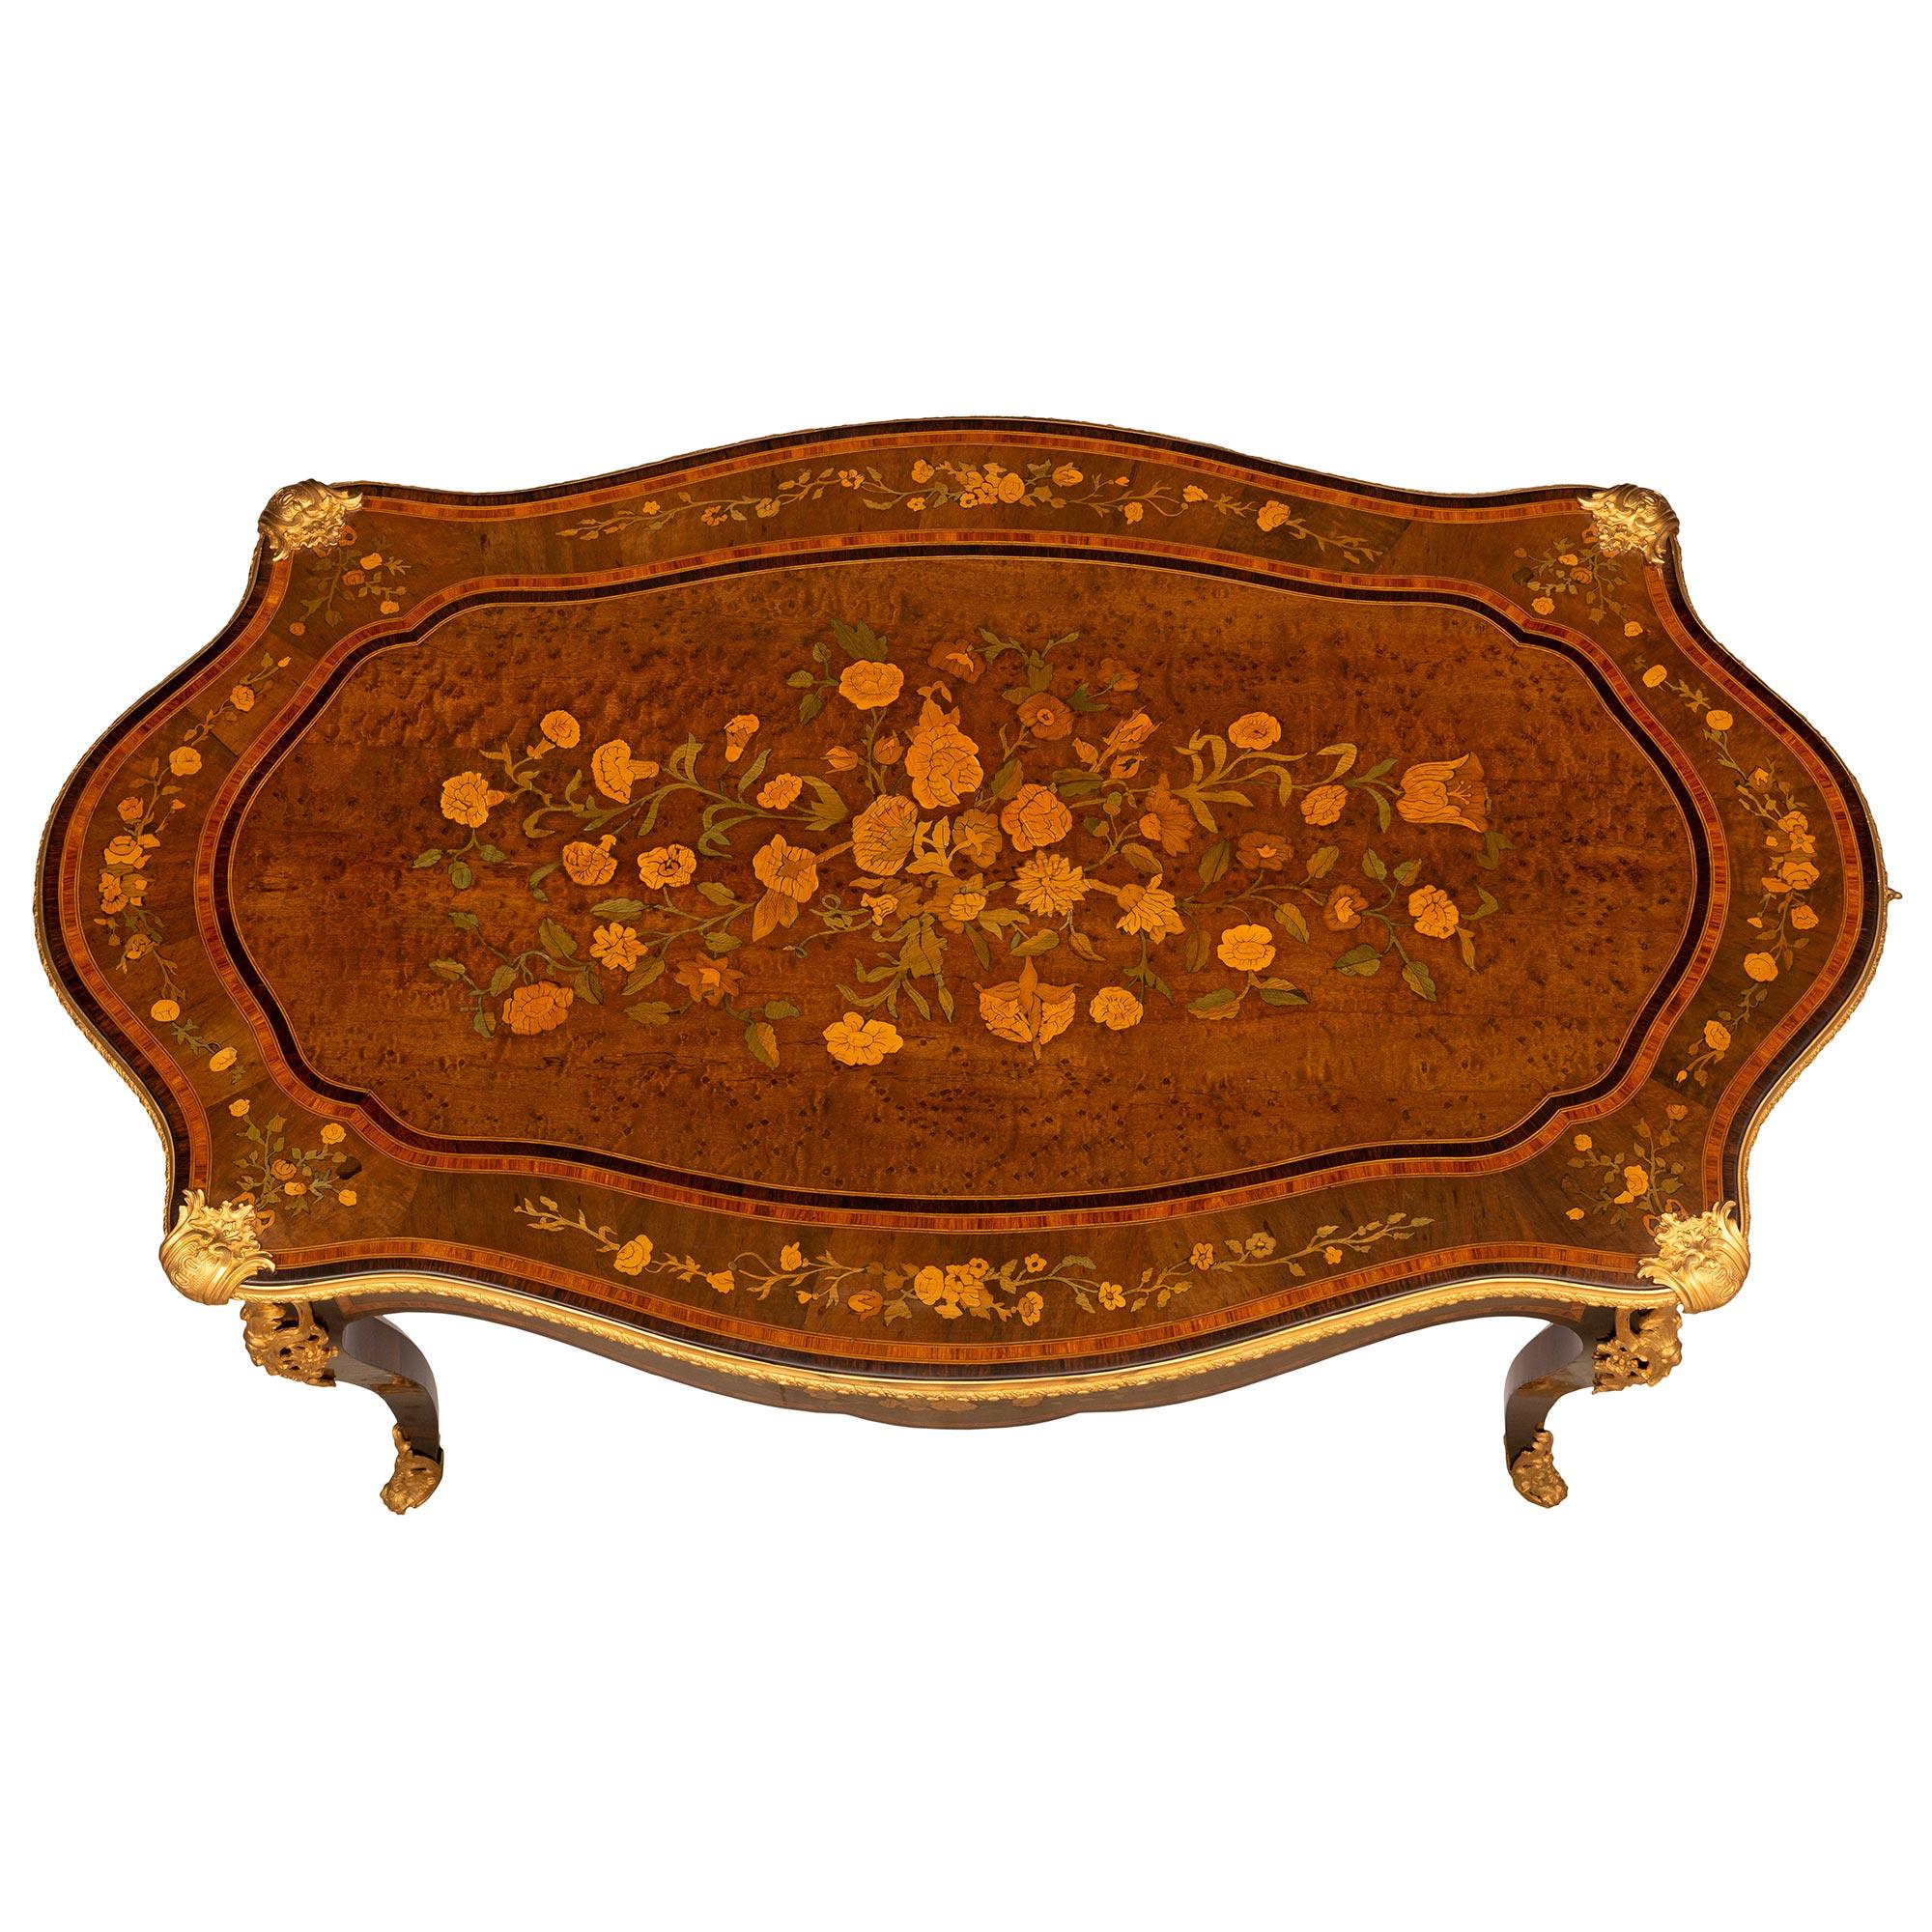 Superbe table de centre en bois exotique et bronze doré, d'époque Louis XV et Napoléon III, datant du milieu du XIXe siècle. La table à deux tiroirs en forme de feston est surélevée par d'élégants pieds cabriole en palissandre avec des sabots